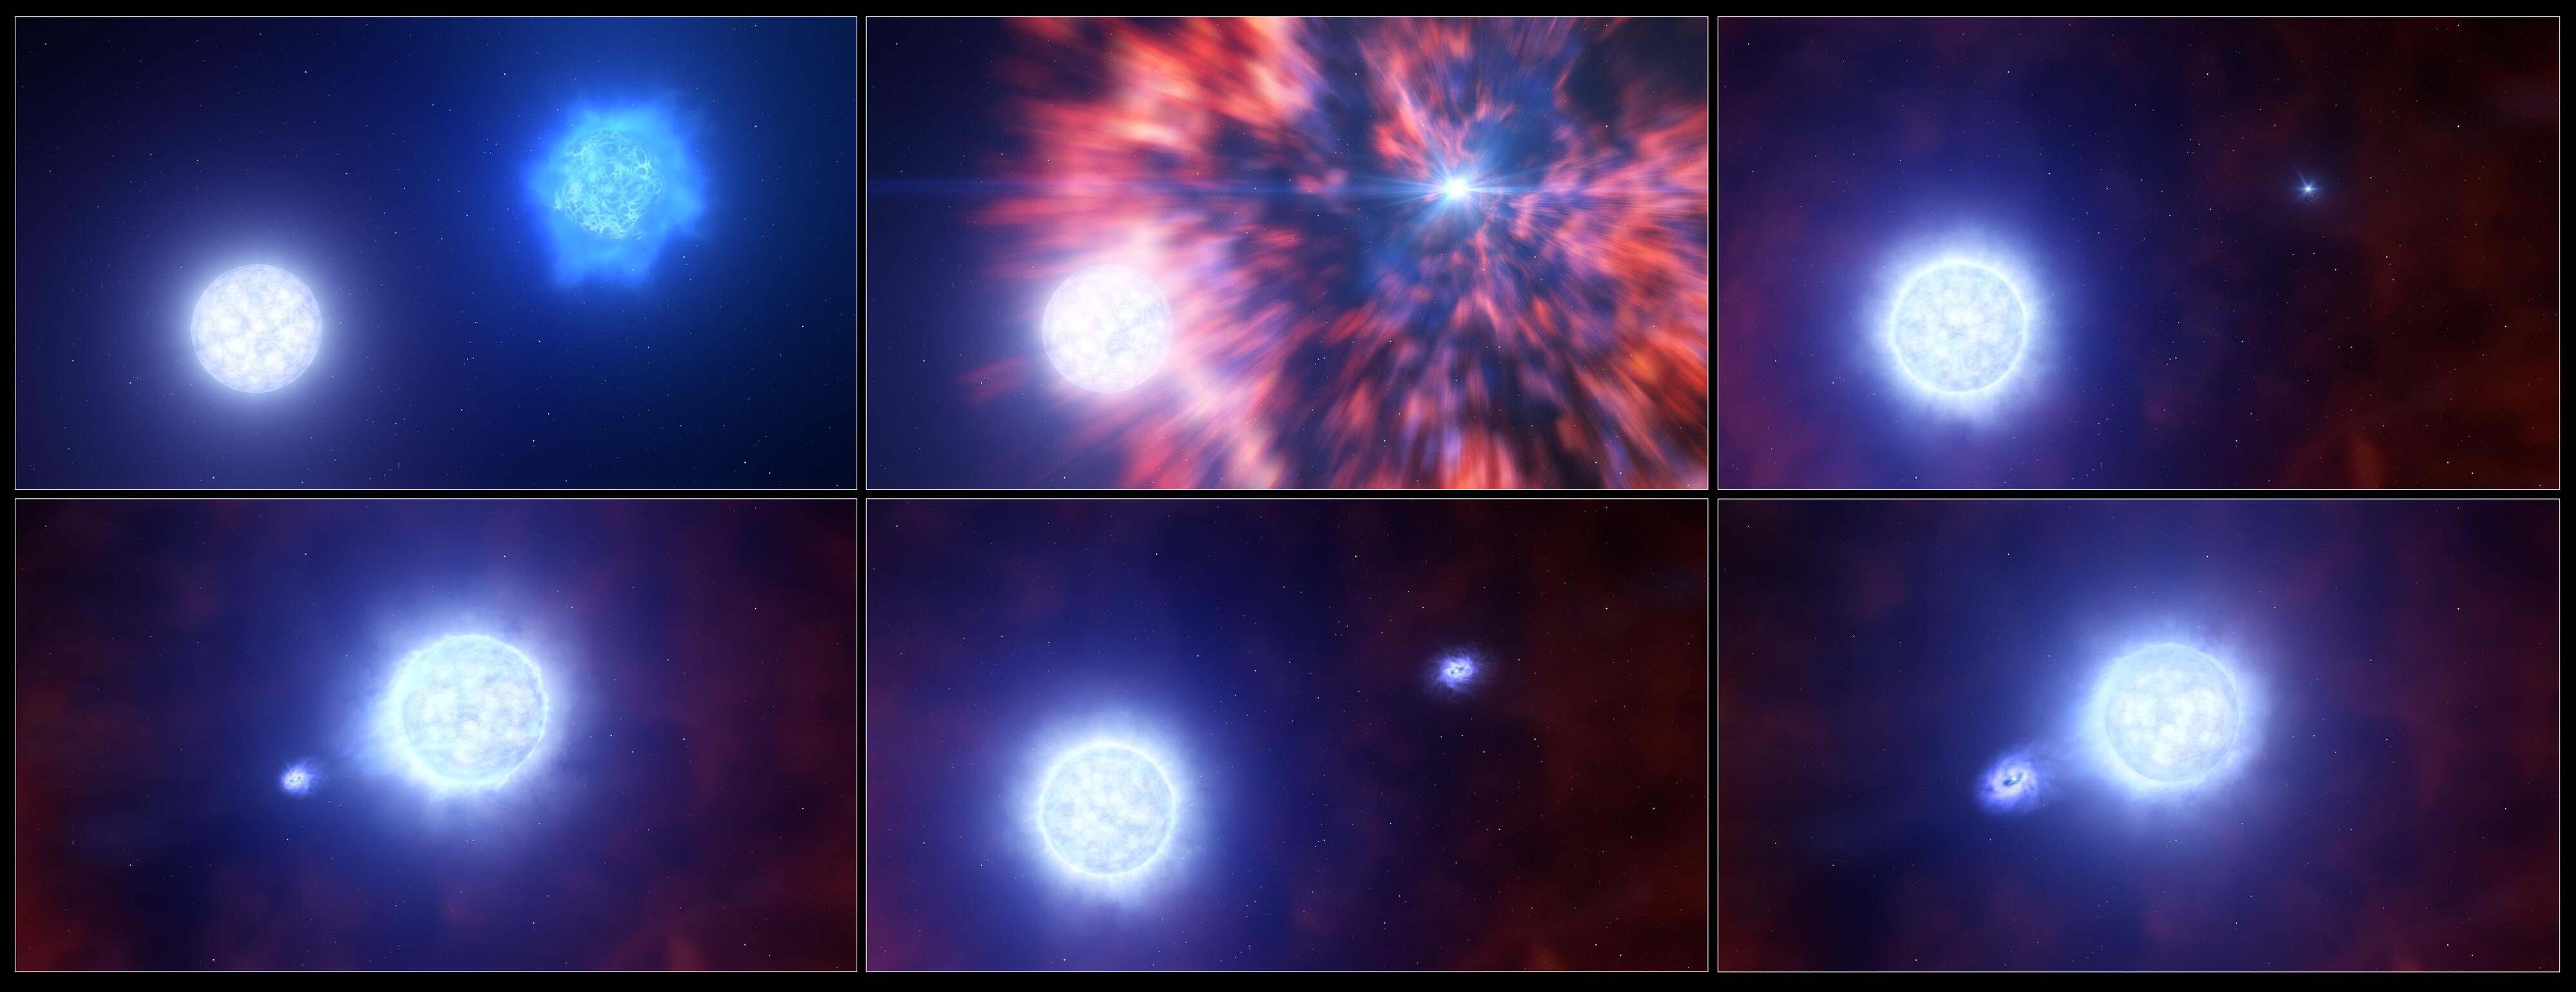 Cette vue d'artiste montre le processus par lequel une étoile massive au sein d'un système binaire devient une supernova. Après l'explosion cataclysmique, l'étoile originale laisse derrière elle un objet compact: une étoile à neutrons ou un trou noir. L'étoile compagnon a survécu à l'explosion, mais son atmosphère s'est gonflée. L'objet compact et son étoile compagnon continuent à orbiter l'un autour de l'autre; l'objet compact volant régulièrement de la matière dans l'atmosphère gonflée de l'astre. Cette accrétion de matière a été observée dans les données des équipes de recherche sous la forme de fluctuations régulières de la luminosité, ainsi que des fluctuations périodiques de l'hydrogène. [ESO - L. Calçada]